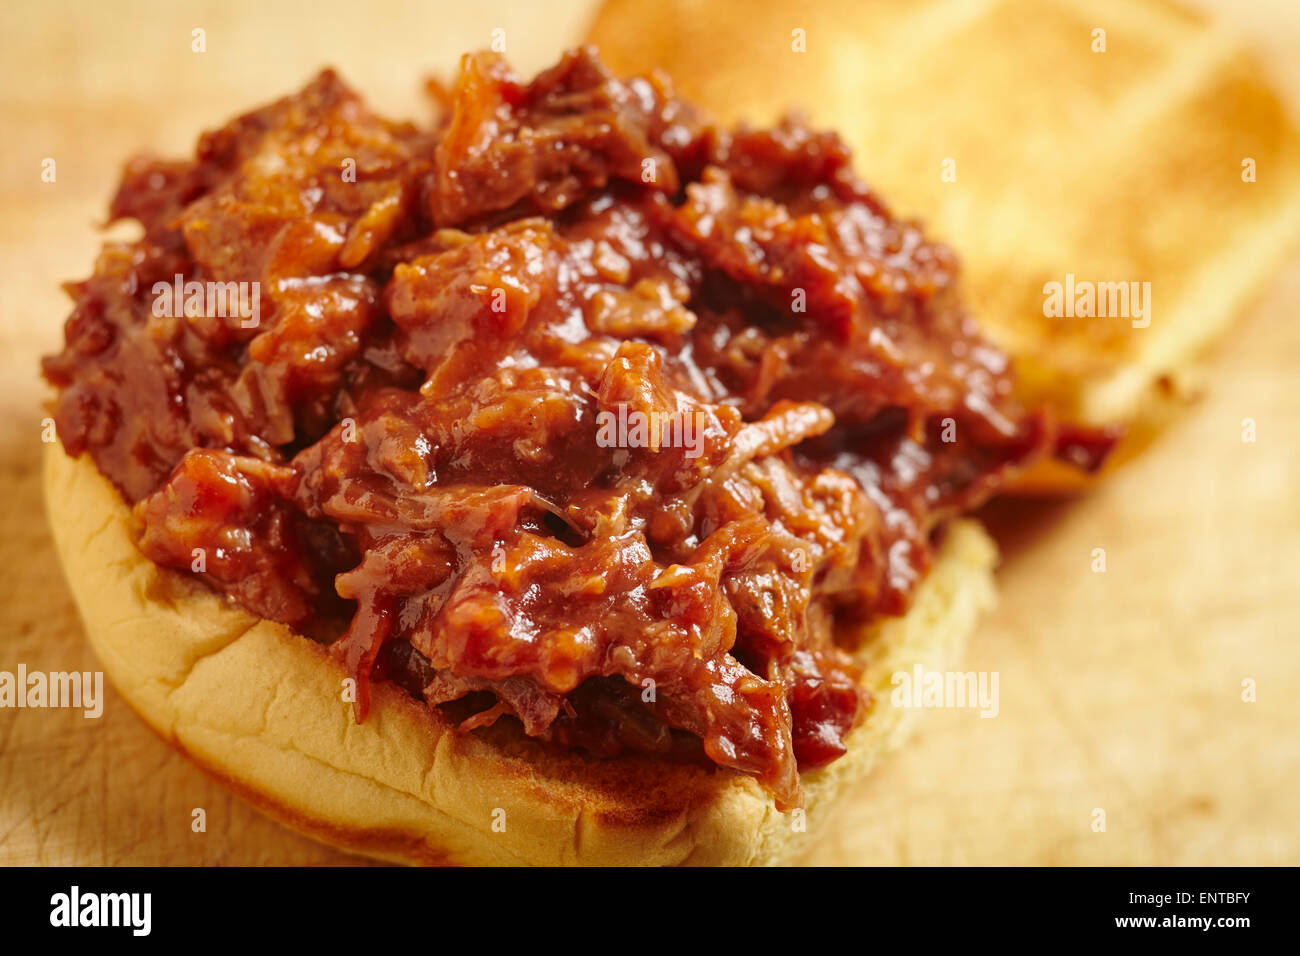 Schweinefleisch, eine Tradition Essen aus den Südstaaten der USA gezogen. Es wird hier auf einem Burger-Brötchen, eine gängige Methode, es heute zu Essen serviert. Stockfoto